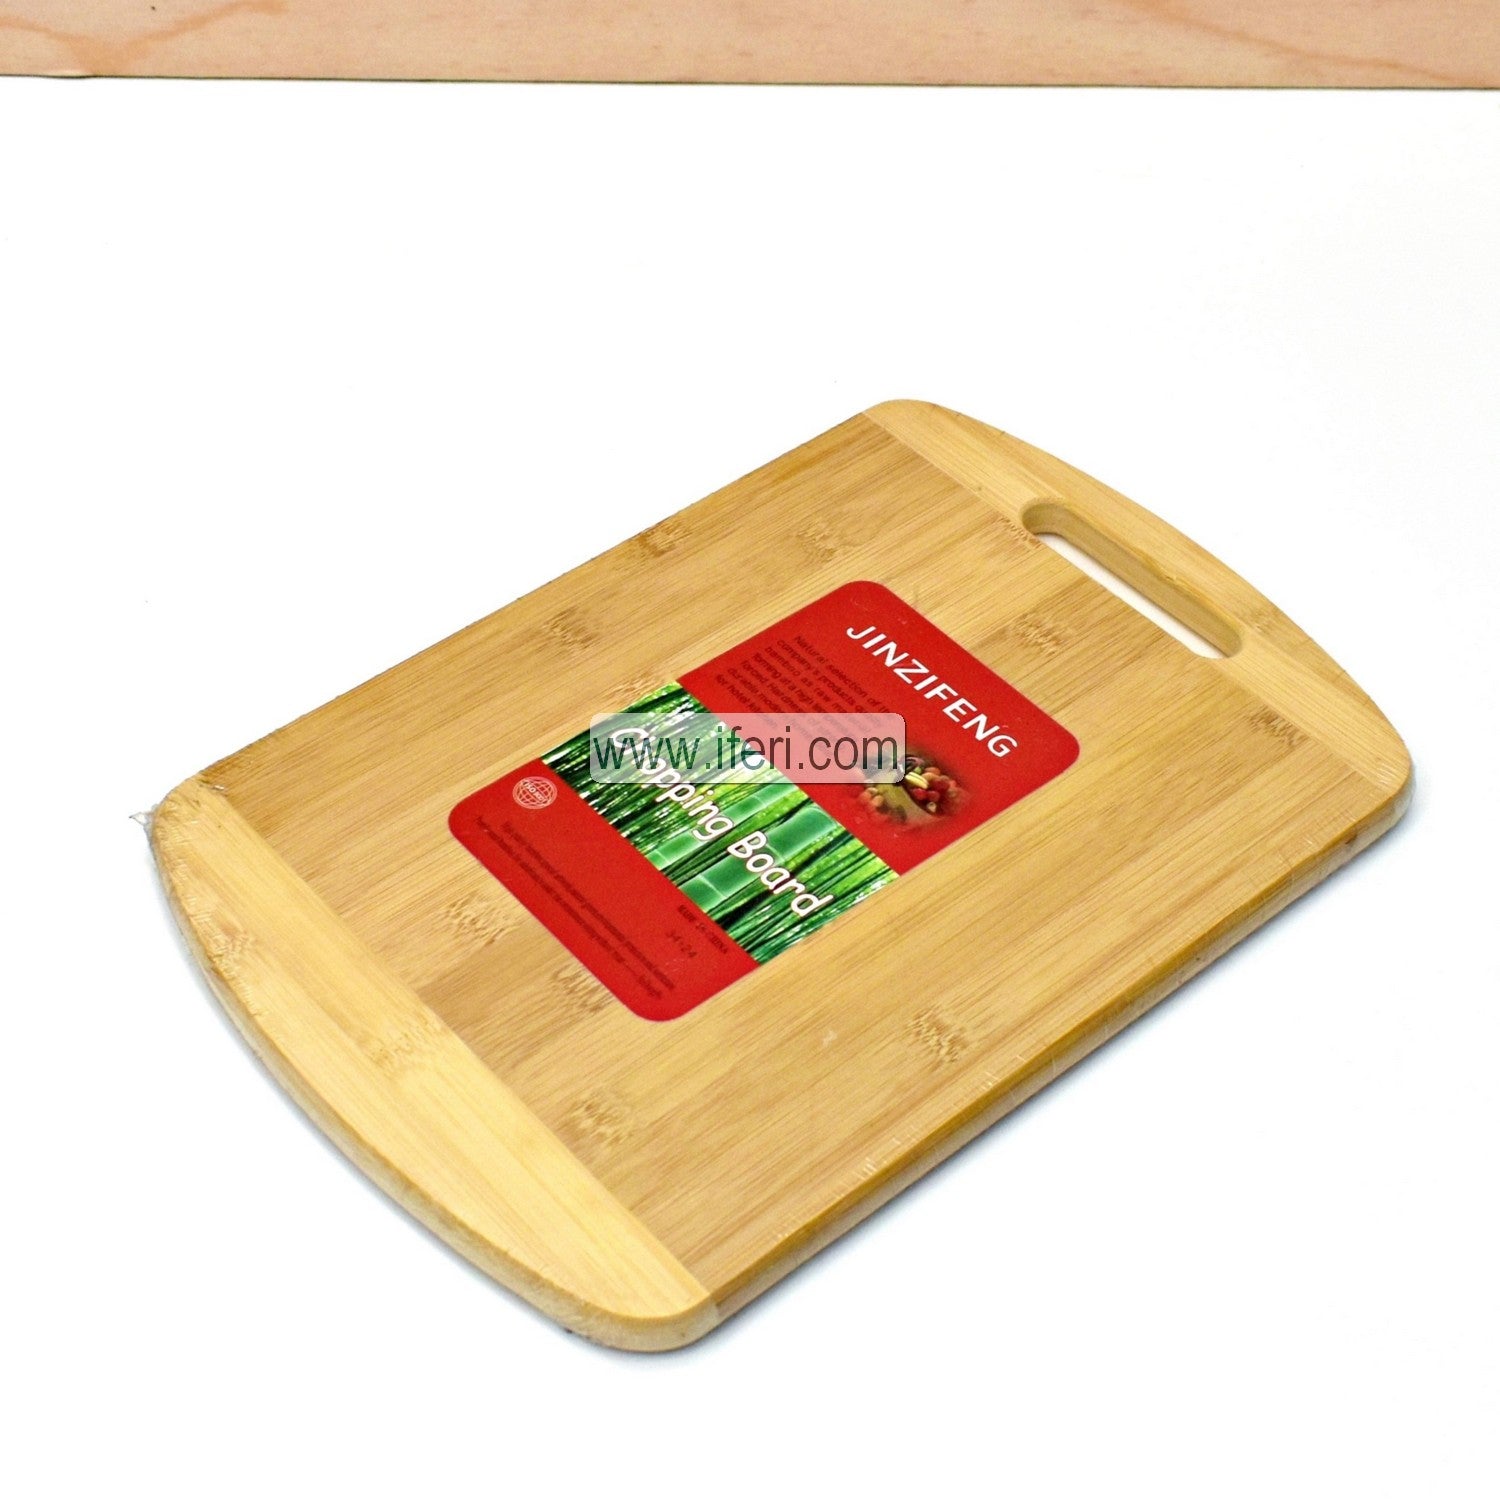 13 Inch Bamboo Cutting Board/Chopping Board LB4878